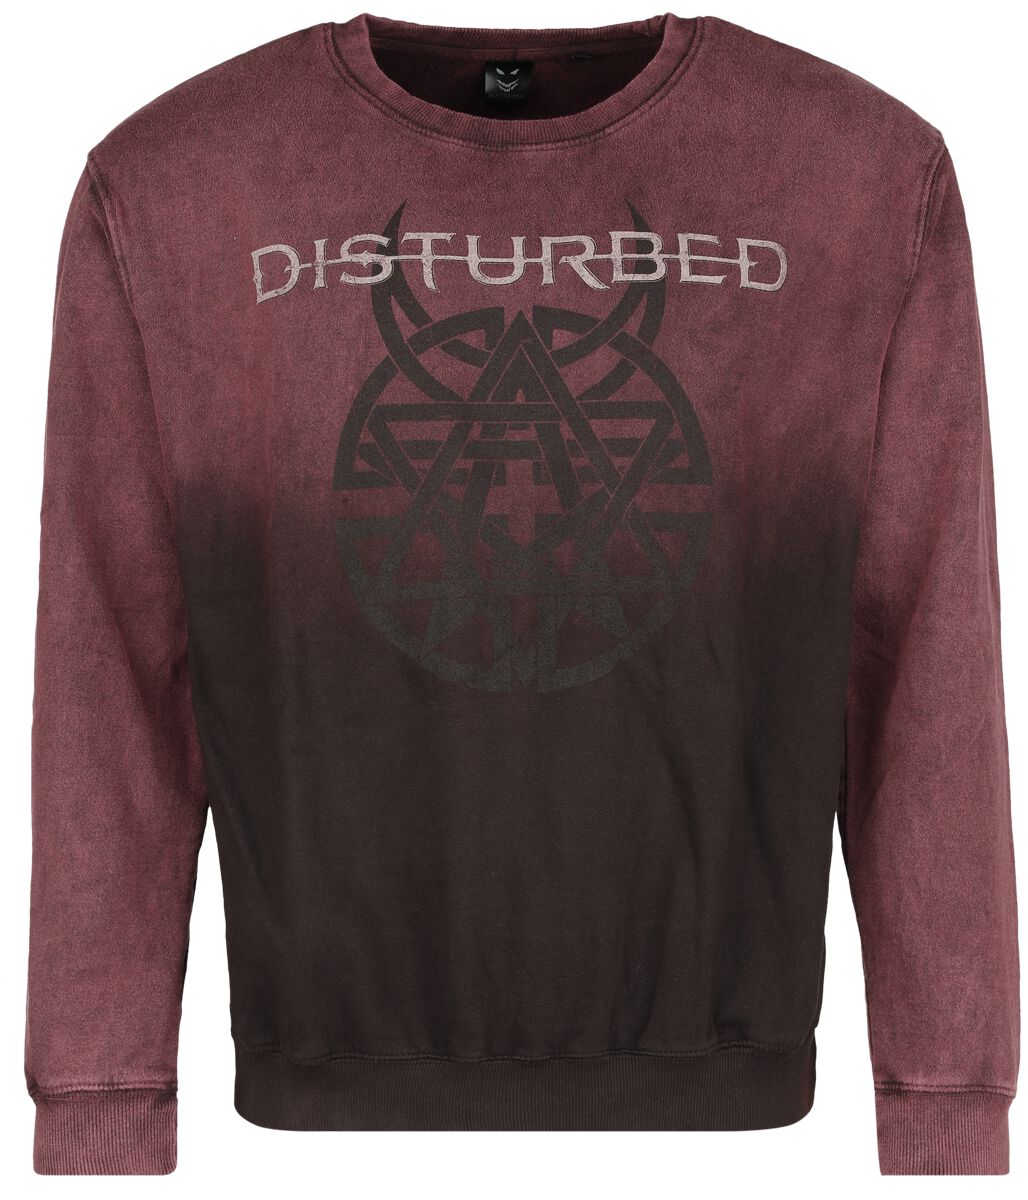 Disturbed Sweatshirt - Believe Symbol - S bis XXL - für Männer - Größe S - dunkelrot  - Lizenziertes Merchandise!